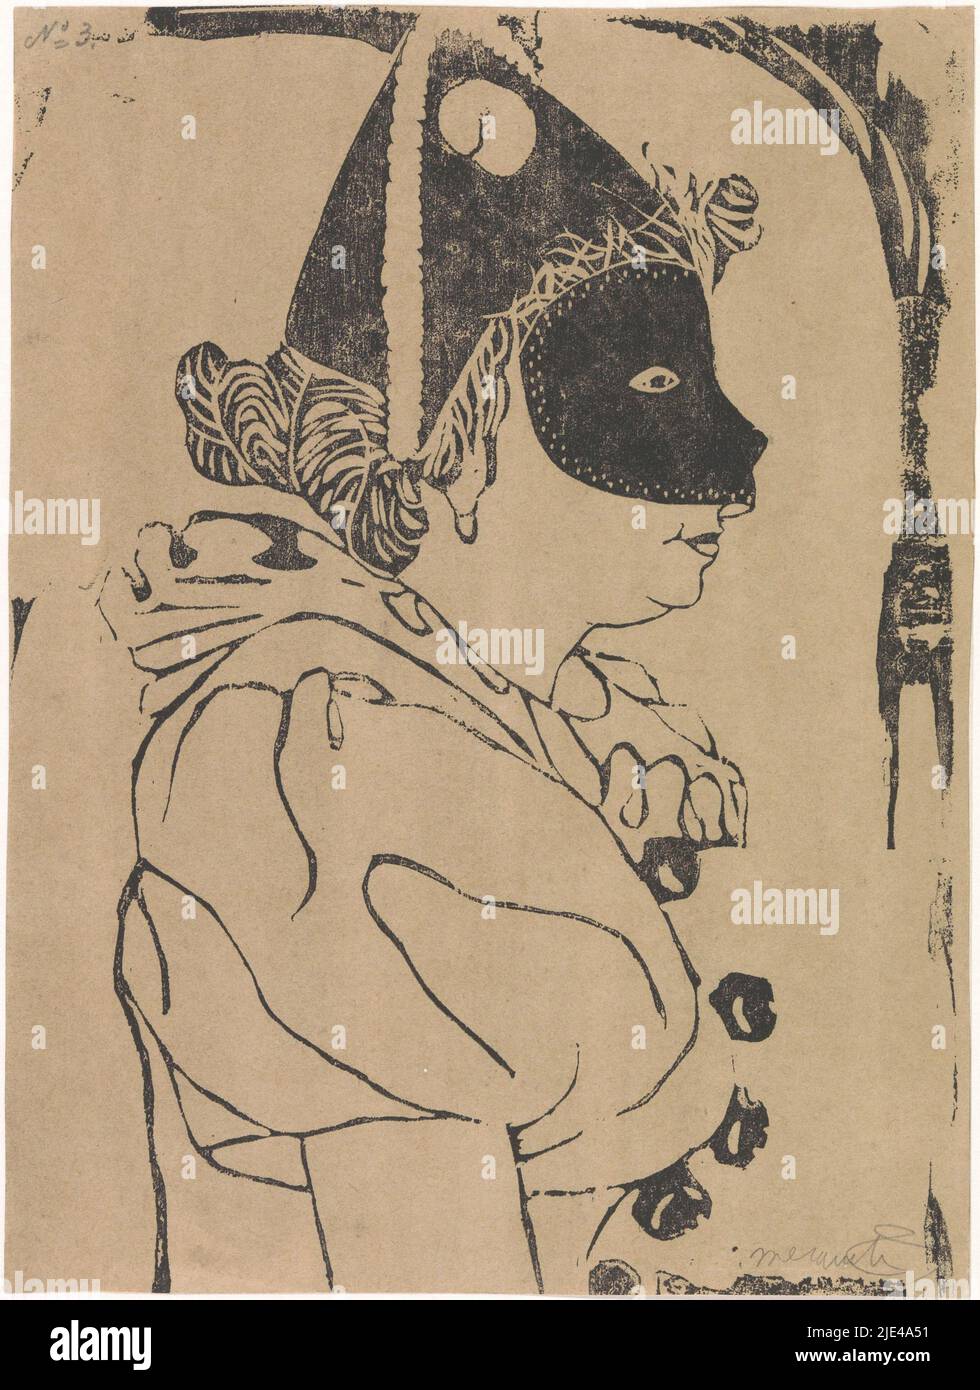 Pierrette, Samuel Jessurun de Mesquita, c. 1899, femme en profil avec des vêtements typiques pour pierrot, comme le masque et le chapeau pointu., imprimeur: Samuel Jessurun de Mesquita, c. 1899, papier, h 258 mm × l 194 mm Banque D'Images